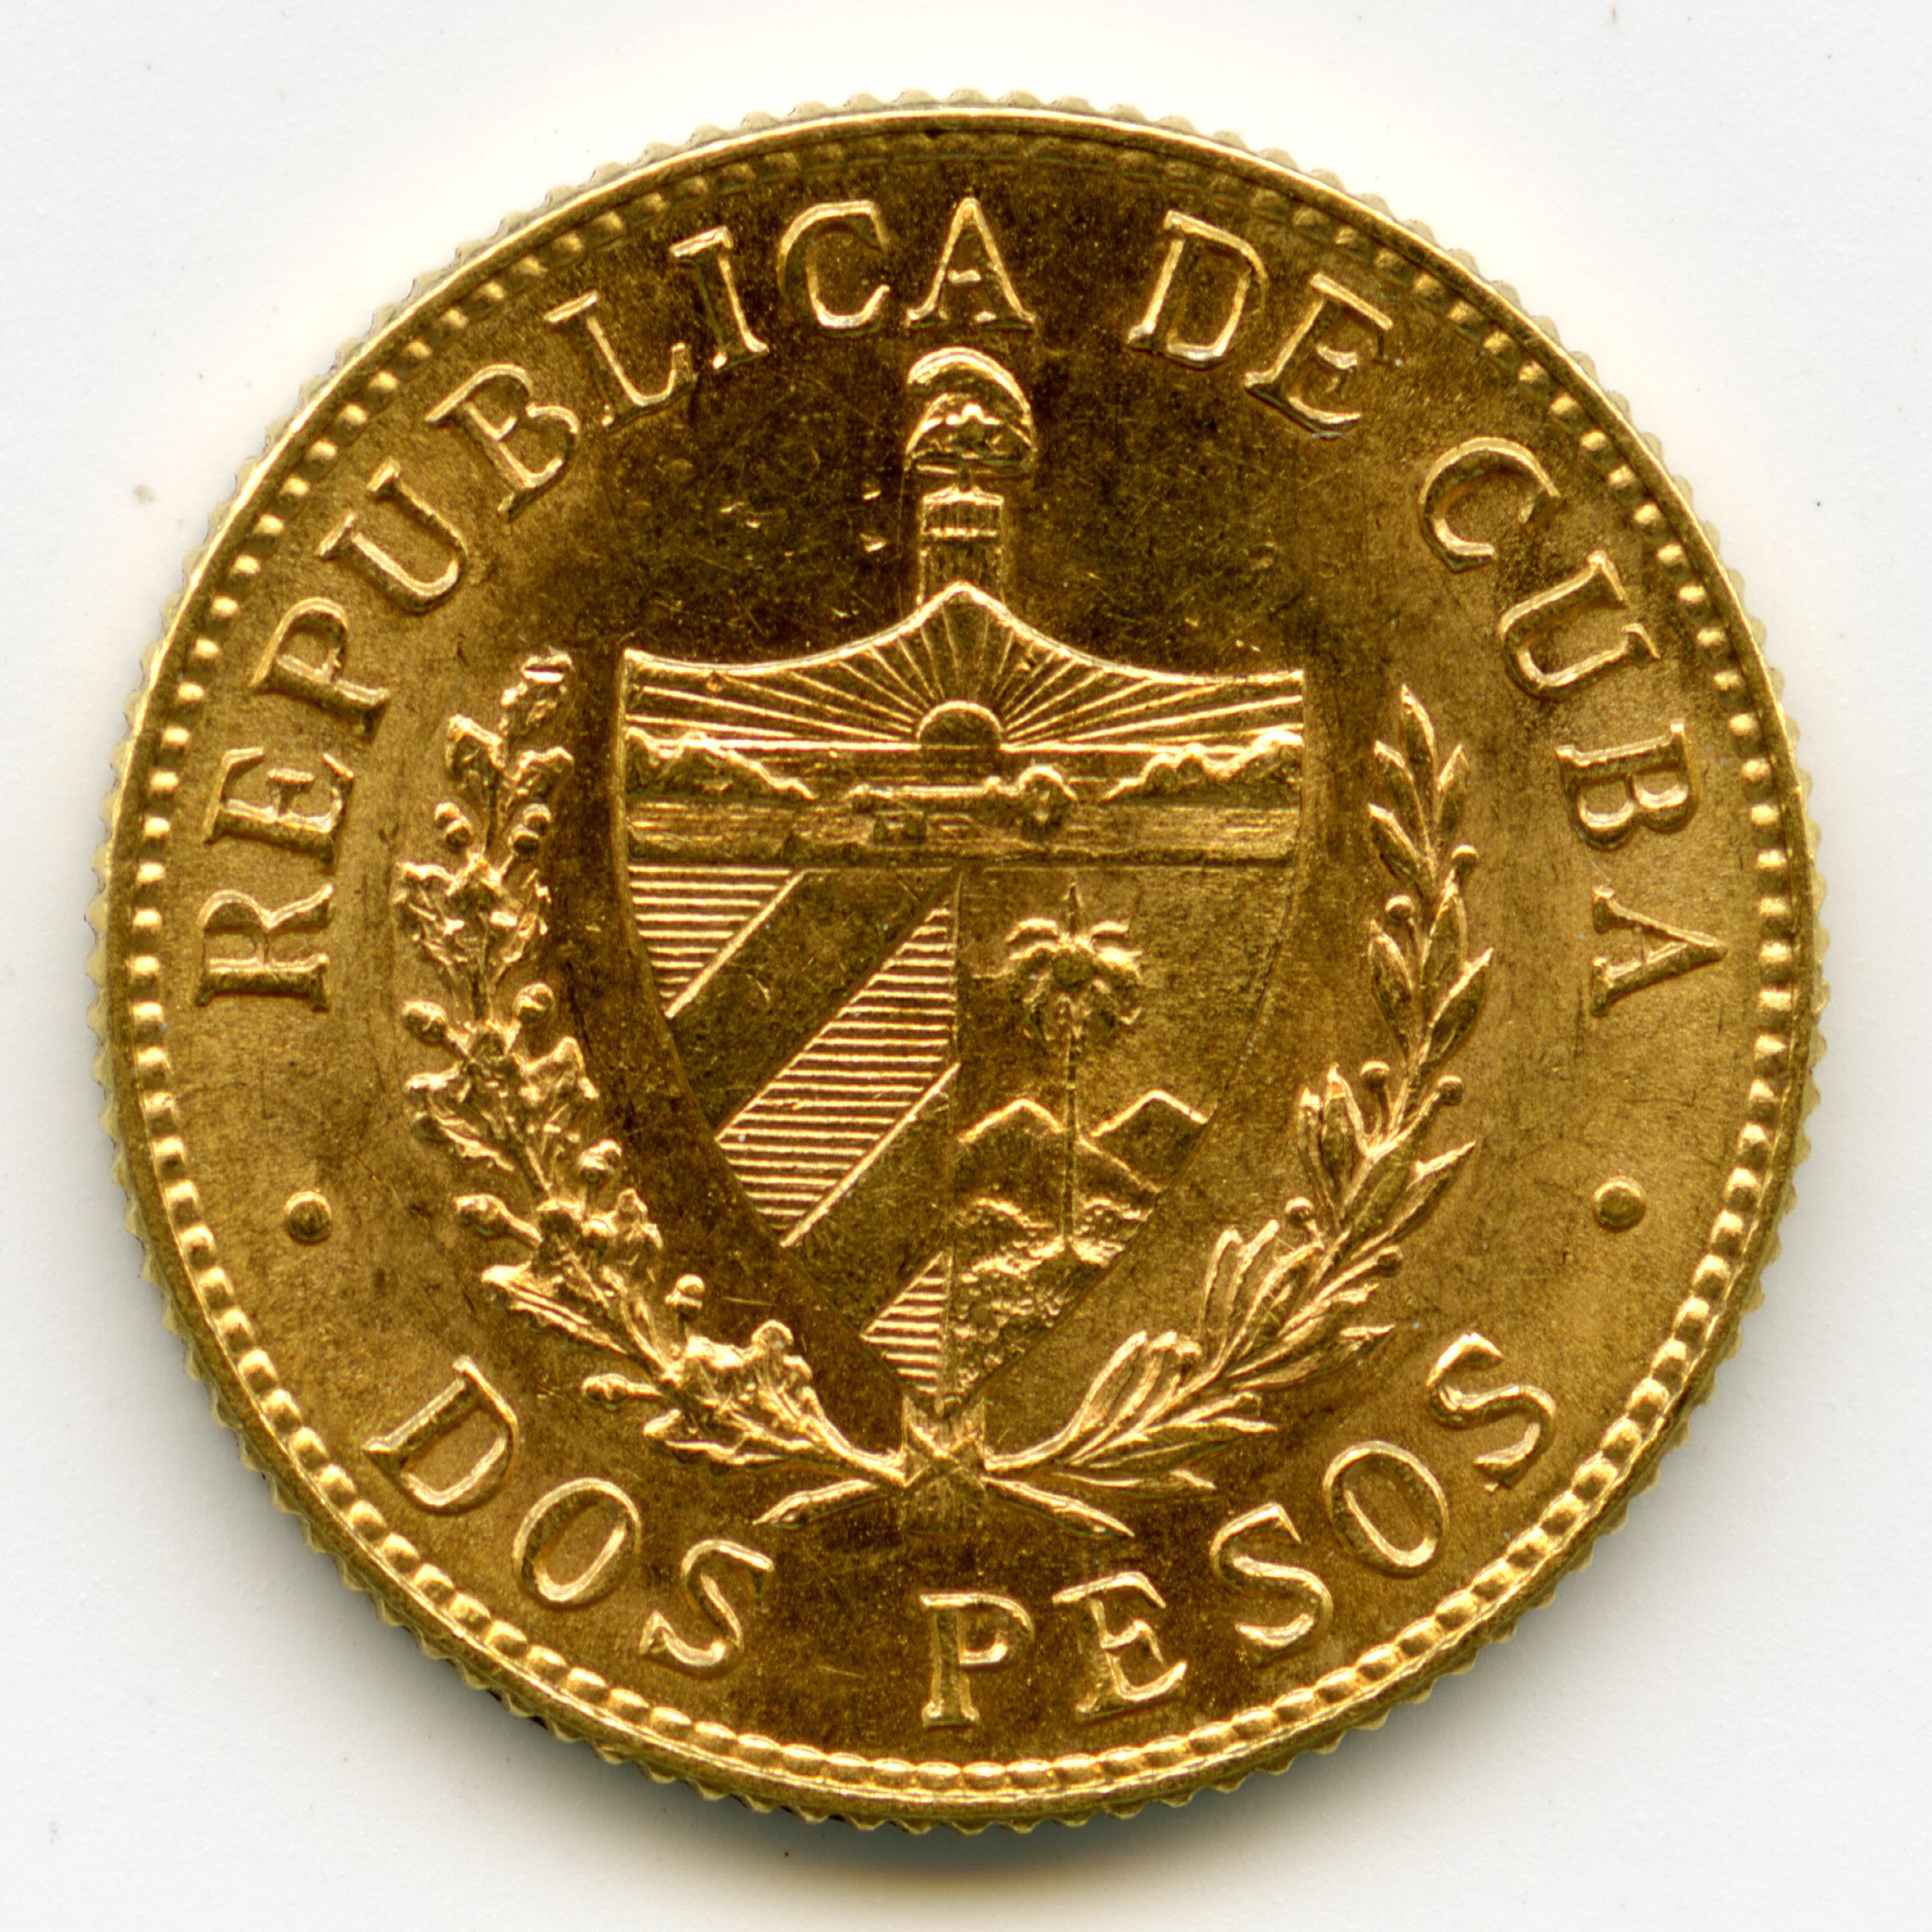 Cuba - 2 Pesos - 1916 revers